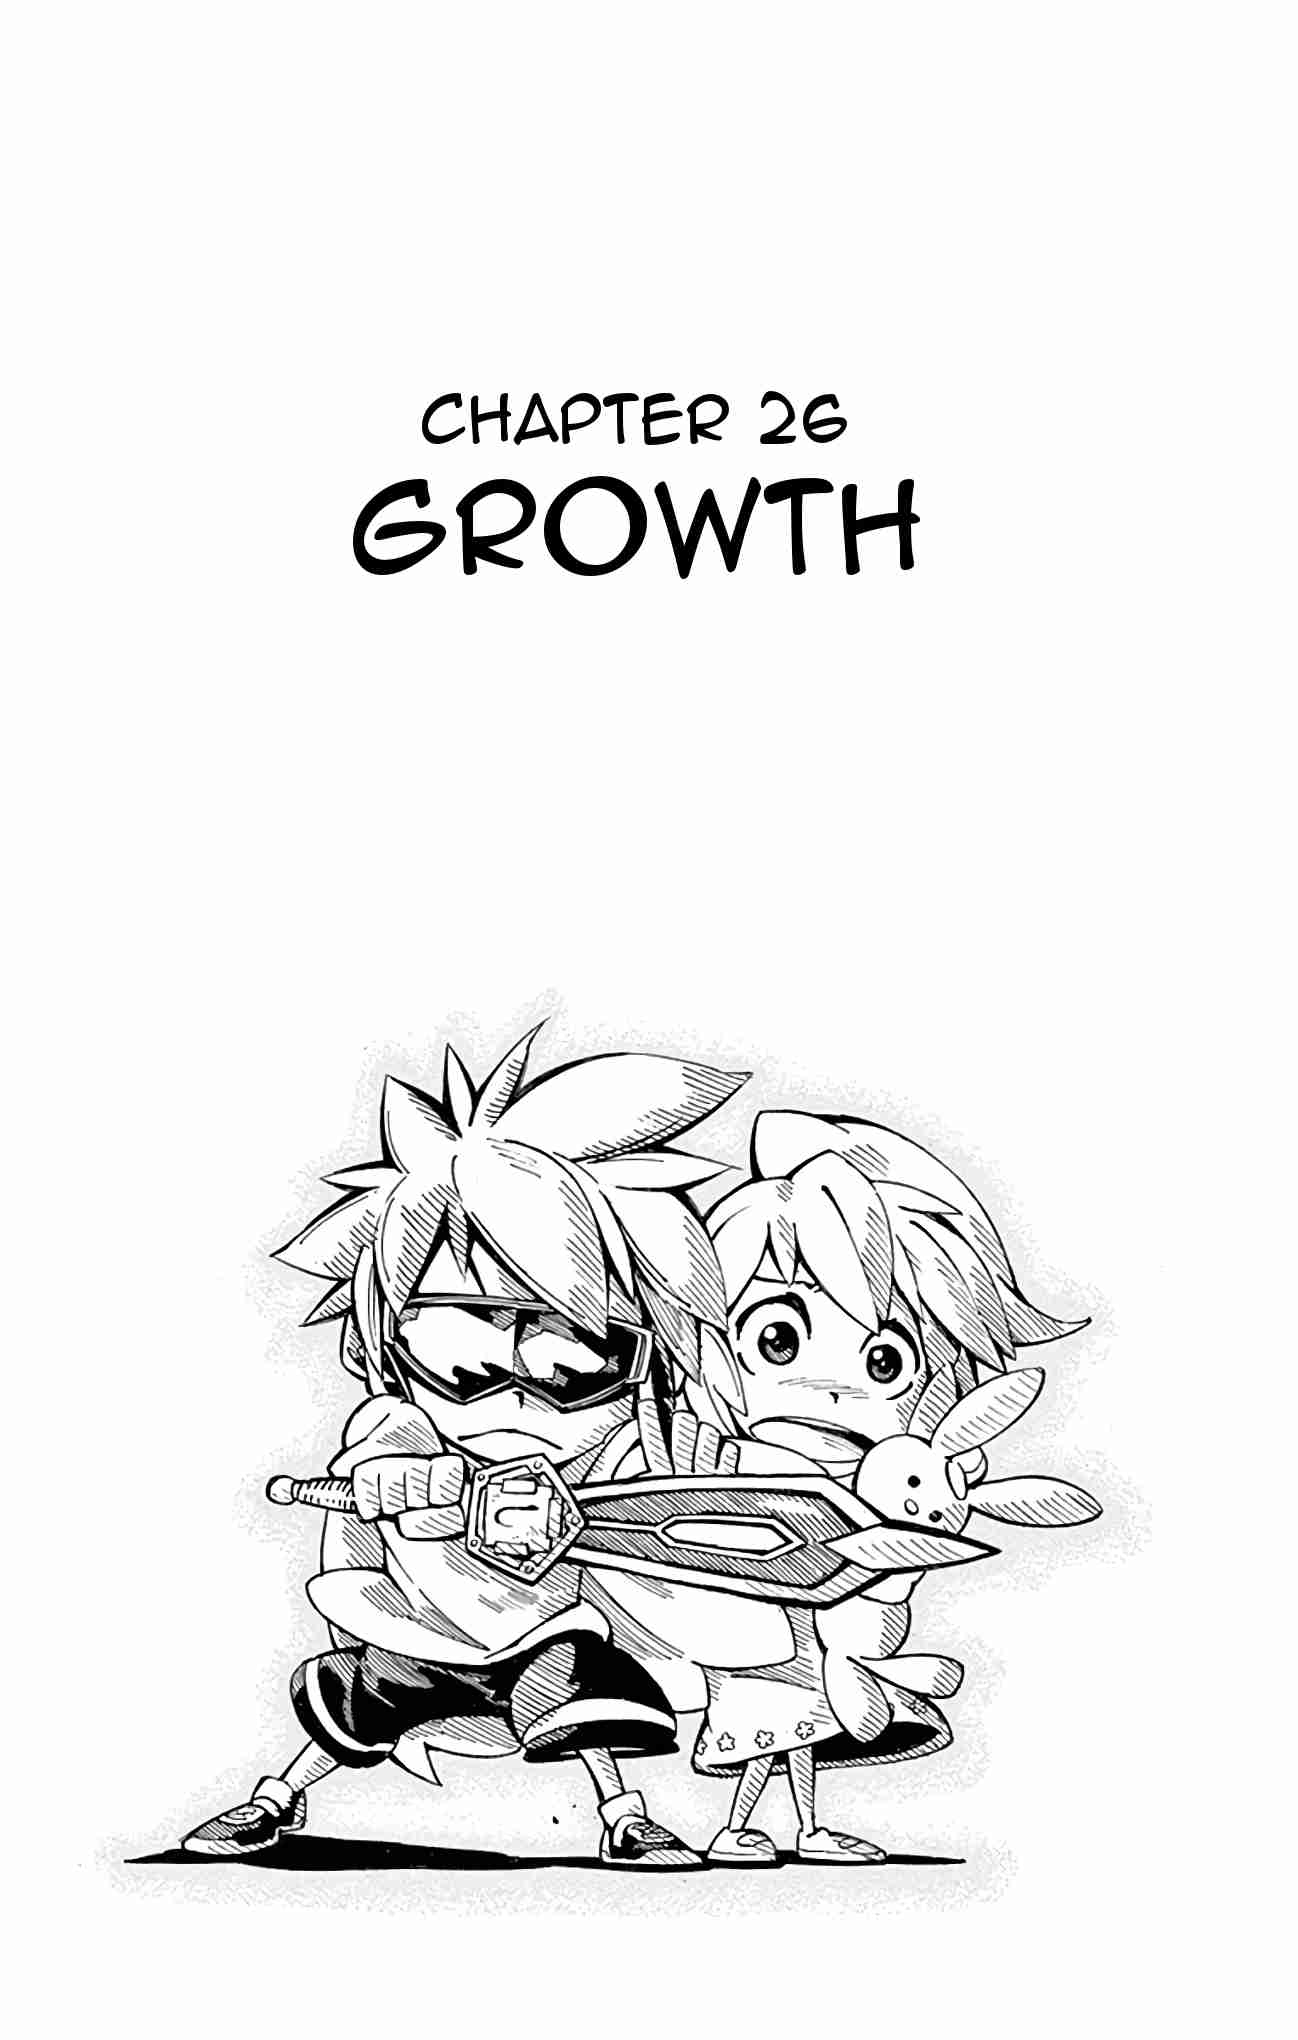 Ginpaku no Paladin Seikishi Vol. 3 Ch. 26 Growth